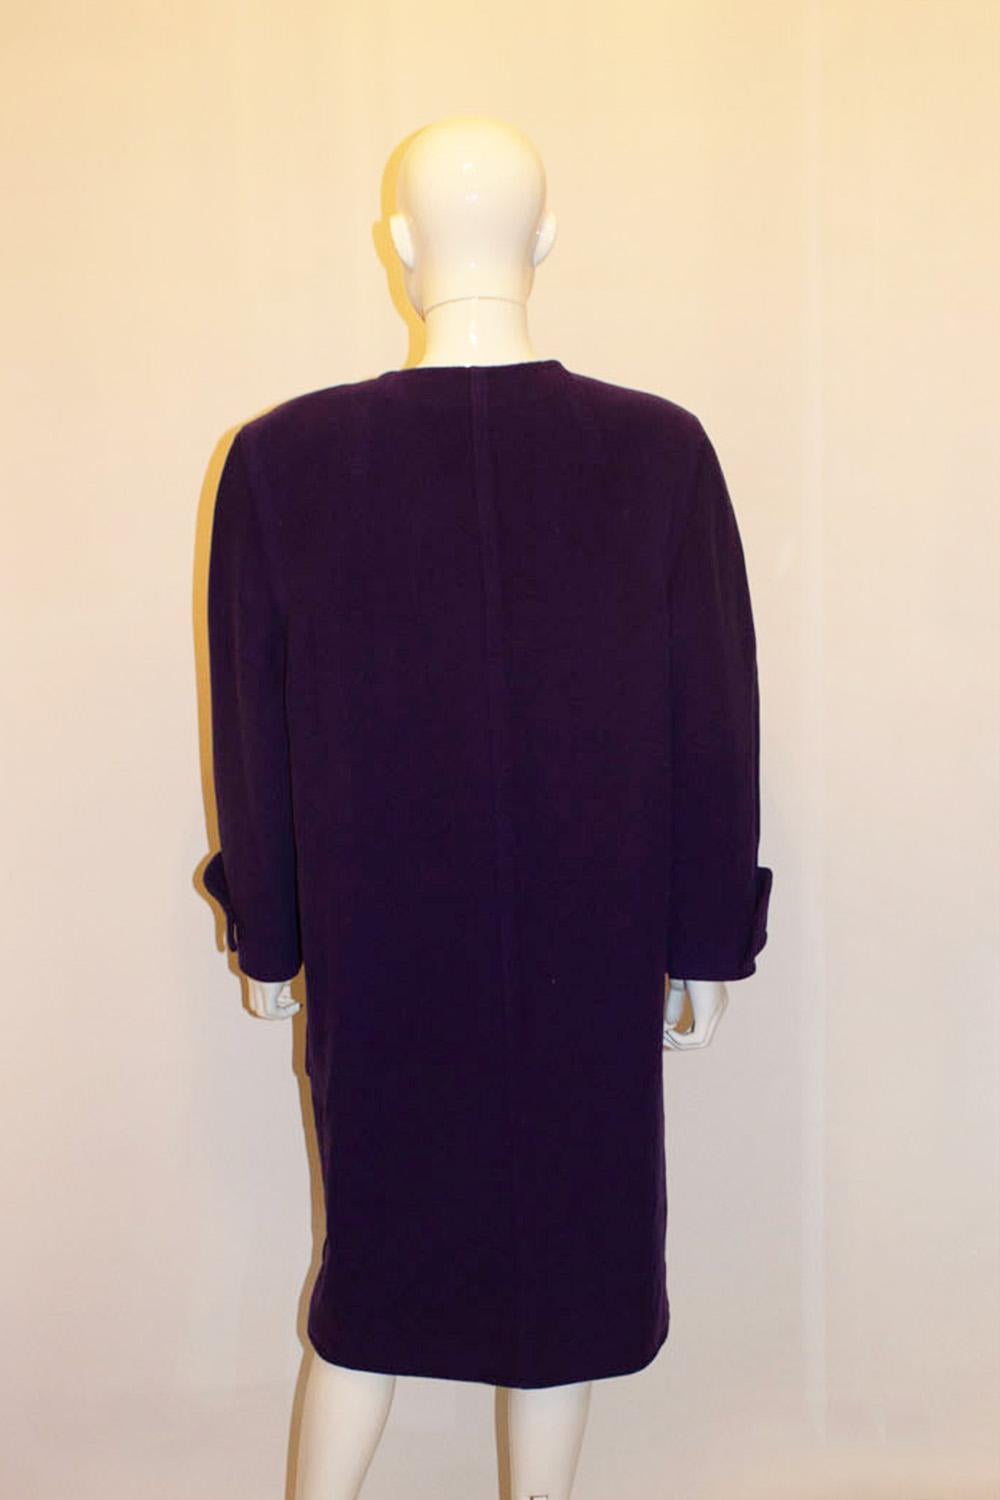 A statement vintage purple coat by Courreges For Sale 2